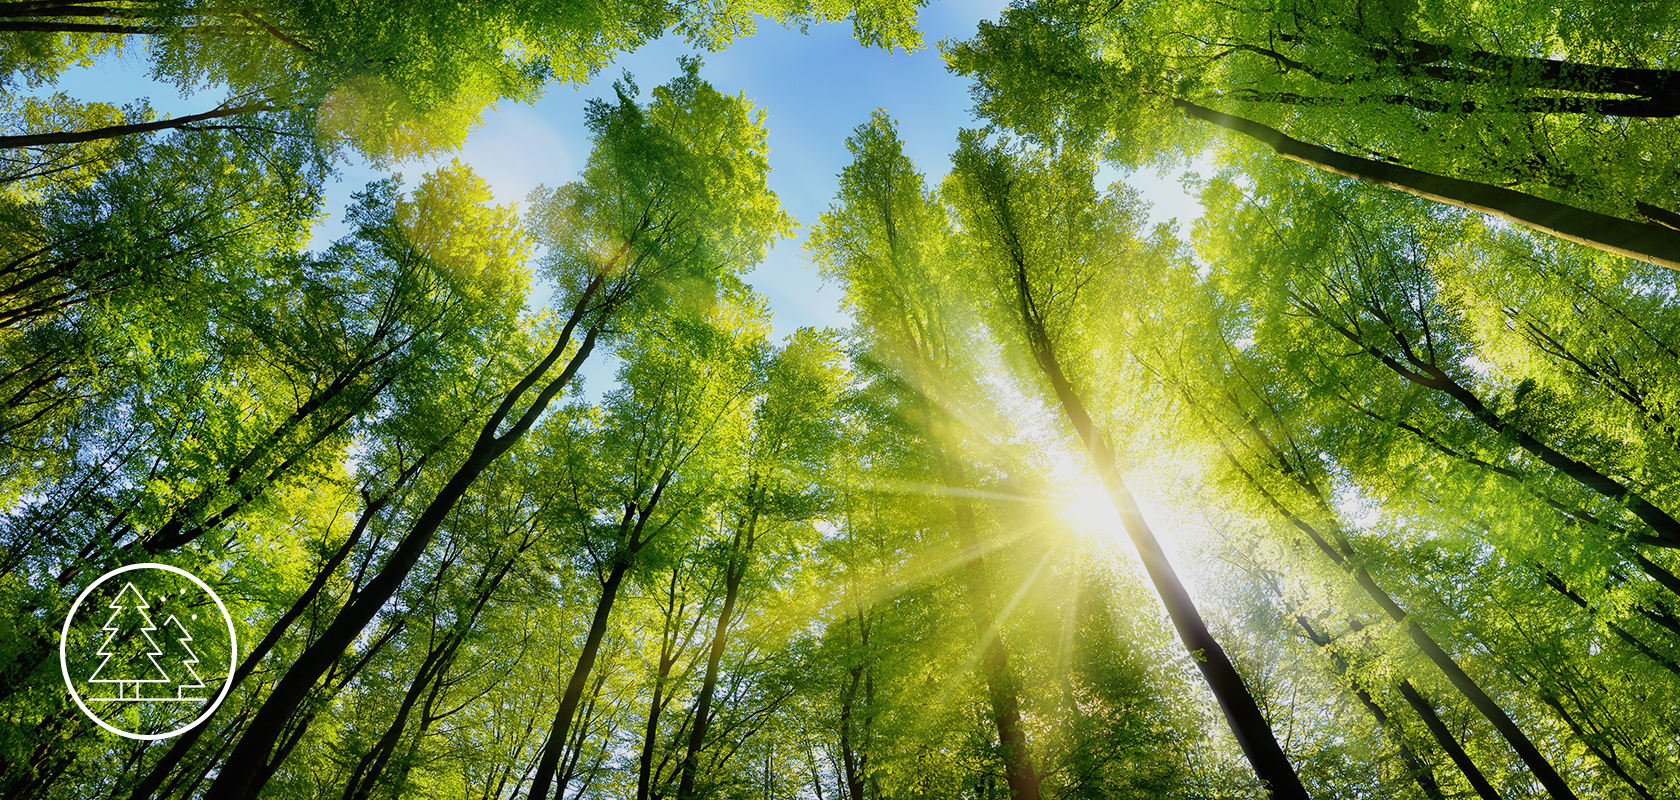 Żywy koronowy las, z promieniami słońca przenikającymi przez liście, podkreślający bujną zielenią i tworzący spokojne, naturalne tło.